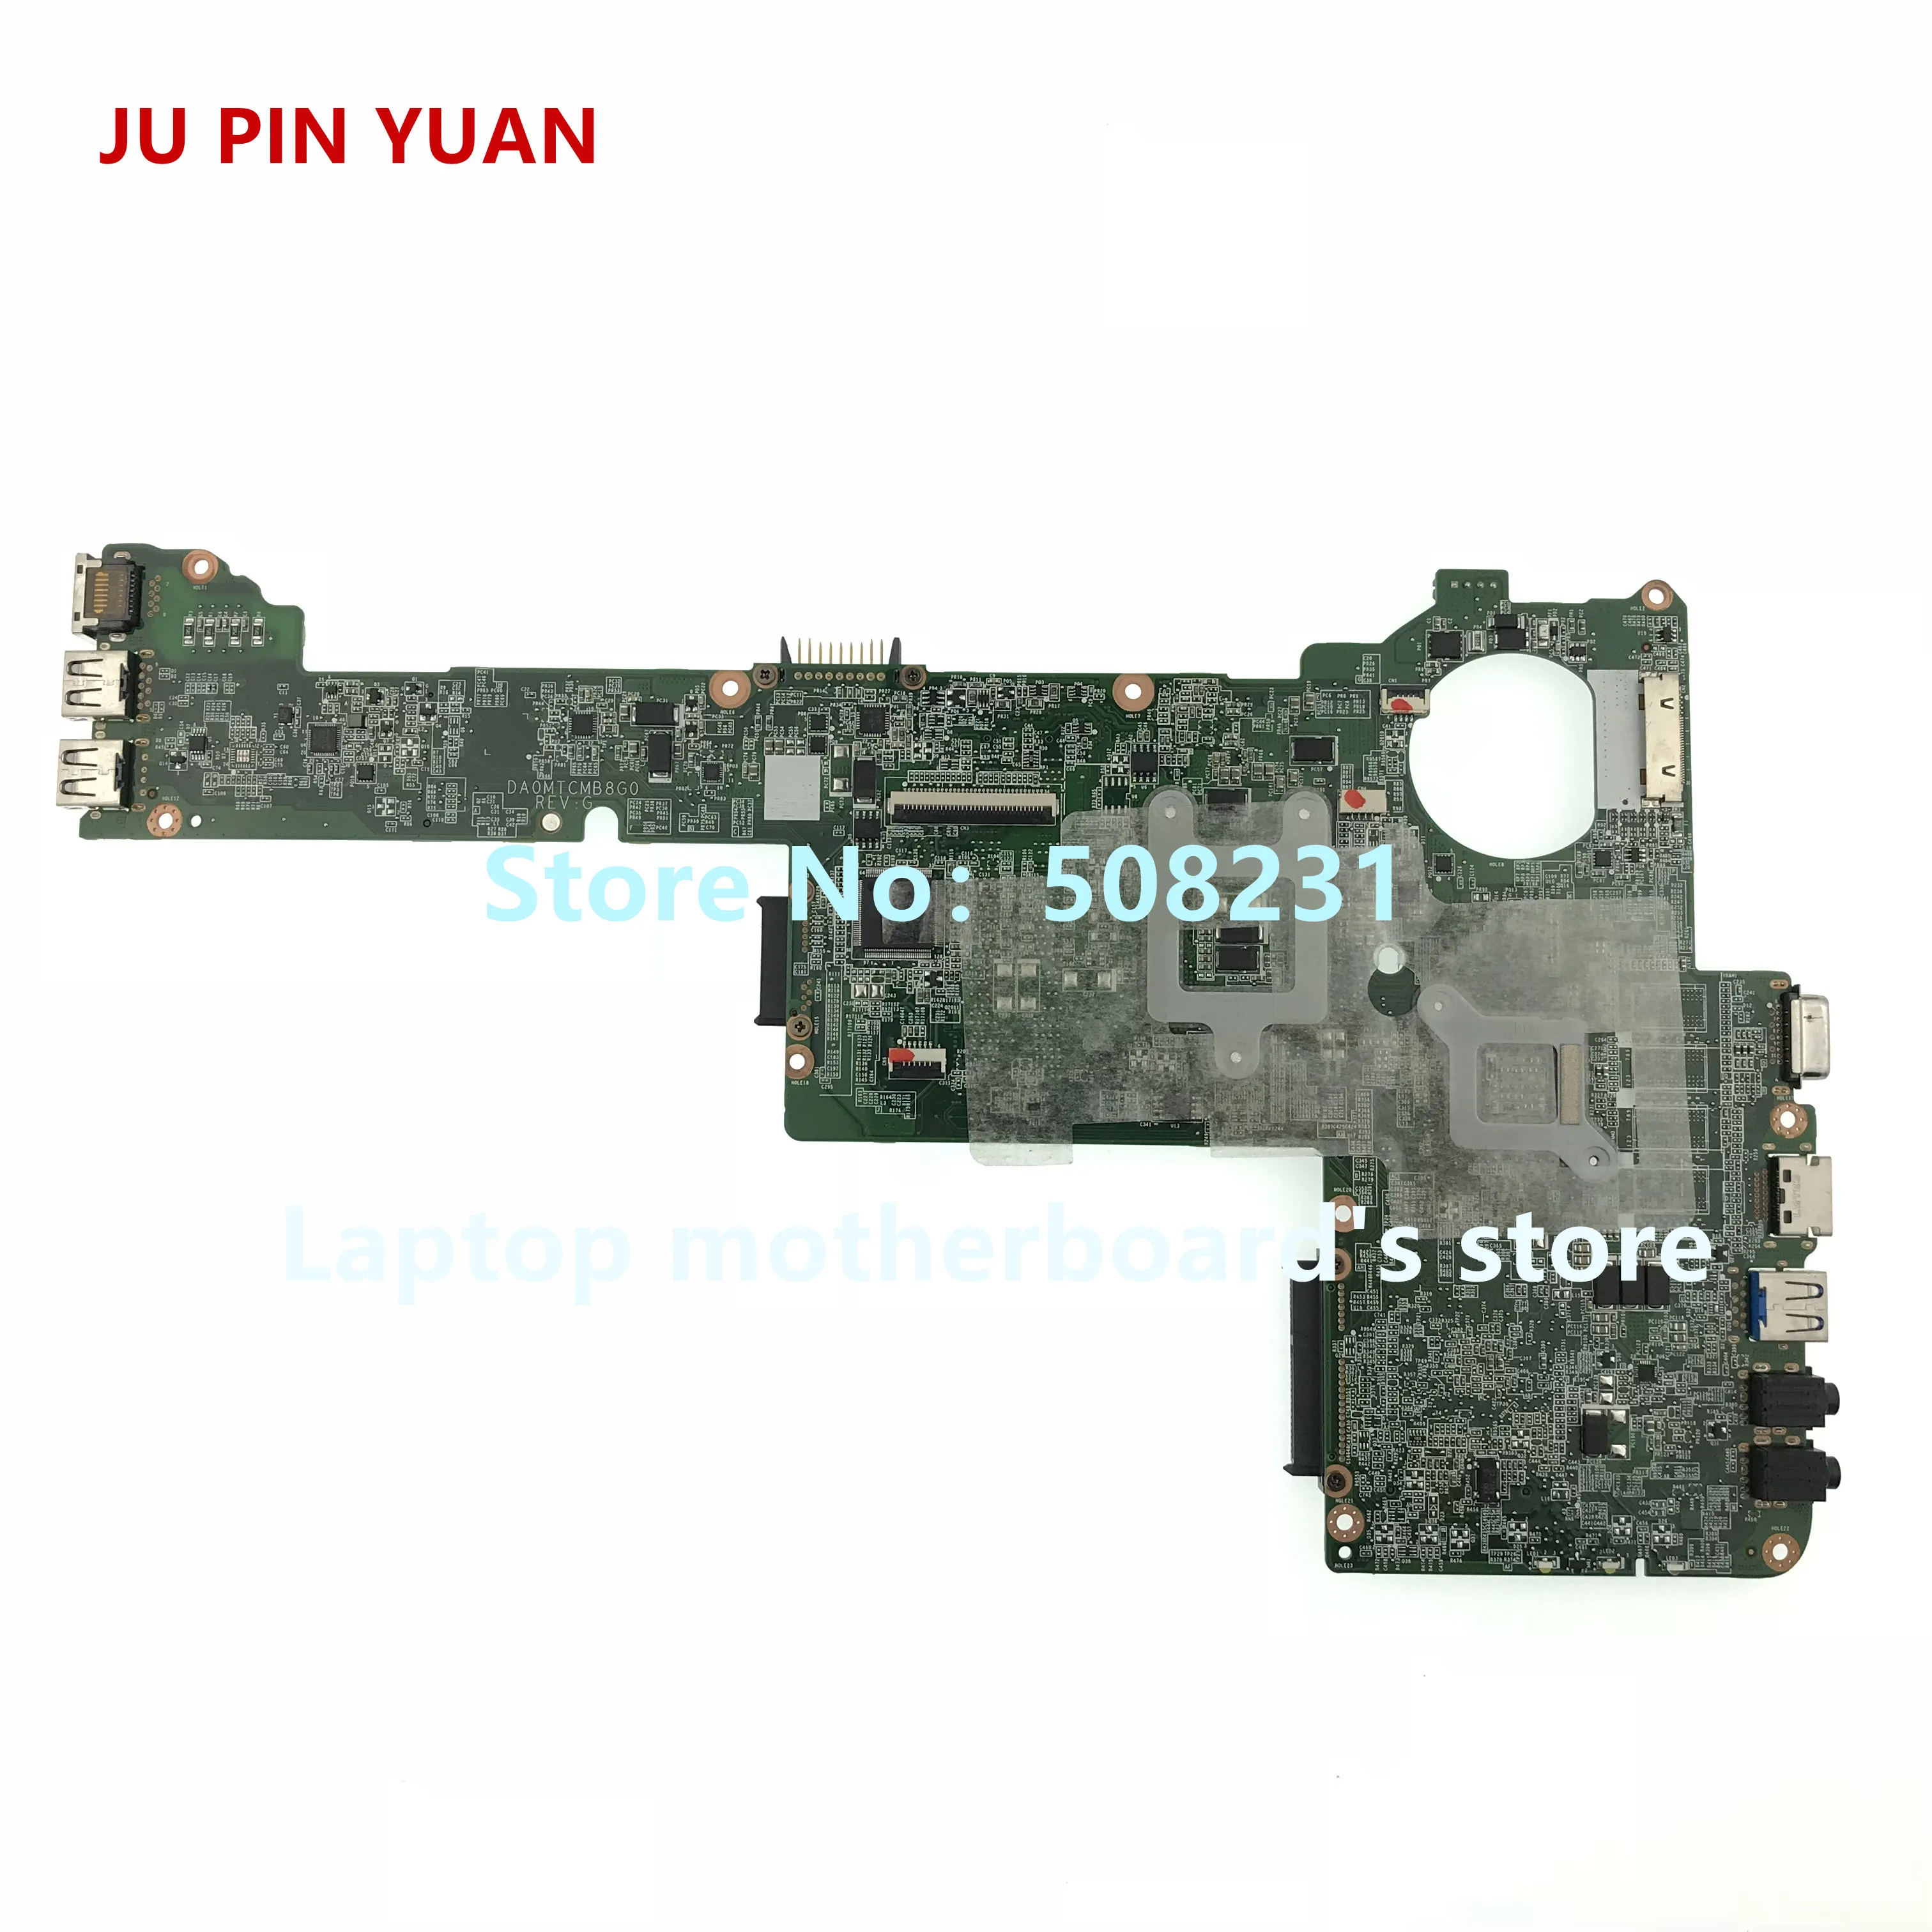 Ju pin yuan A000239480 DA0MTCMB8G0  Toshiba Satellite C40 C40-A      GeForce GT710M + HD4000